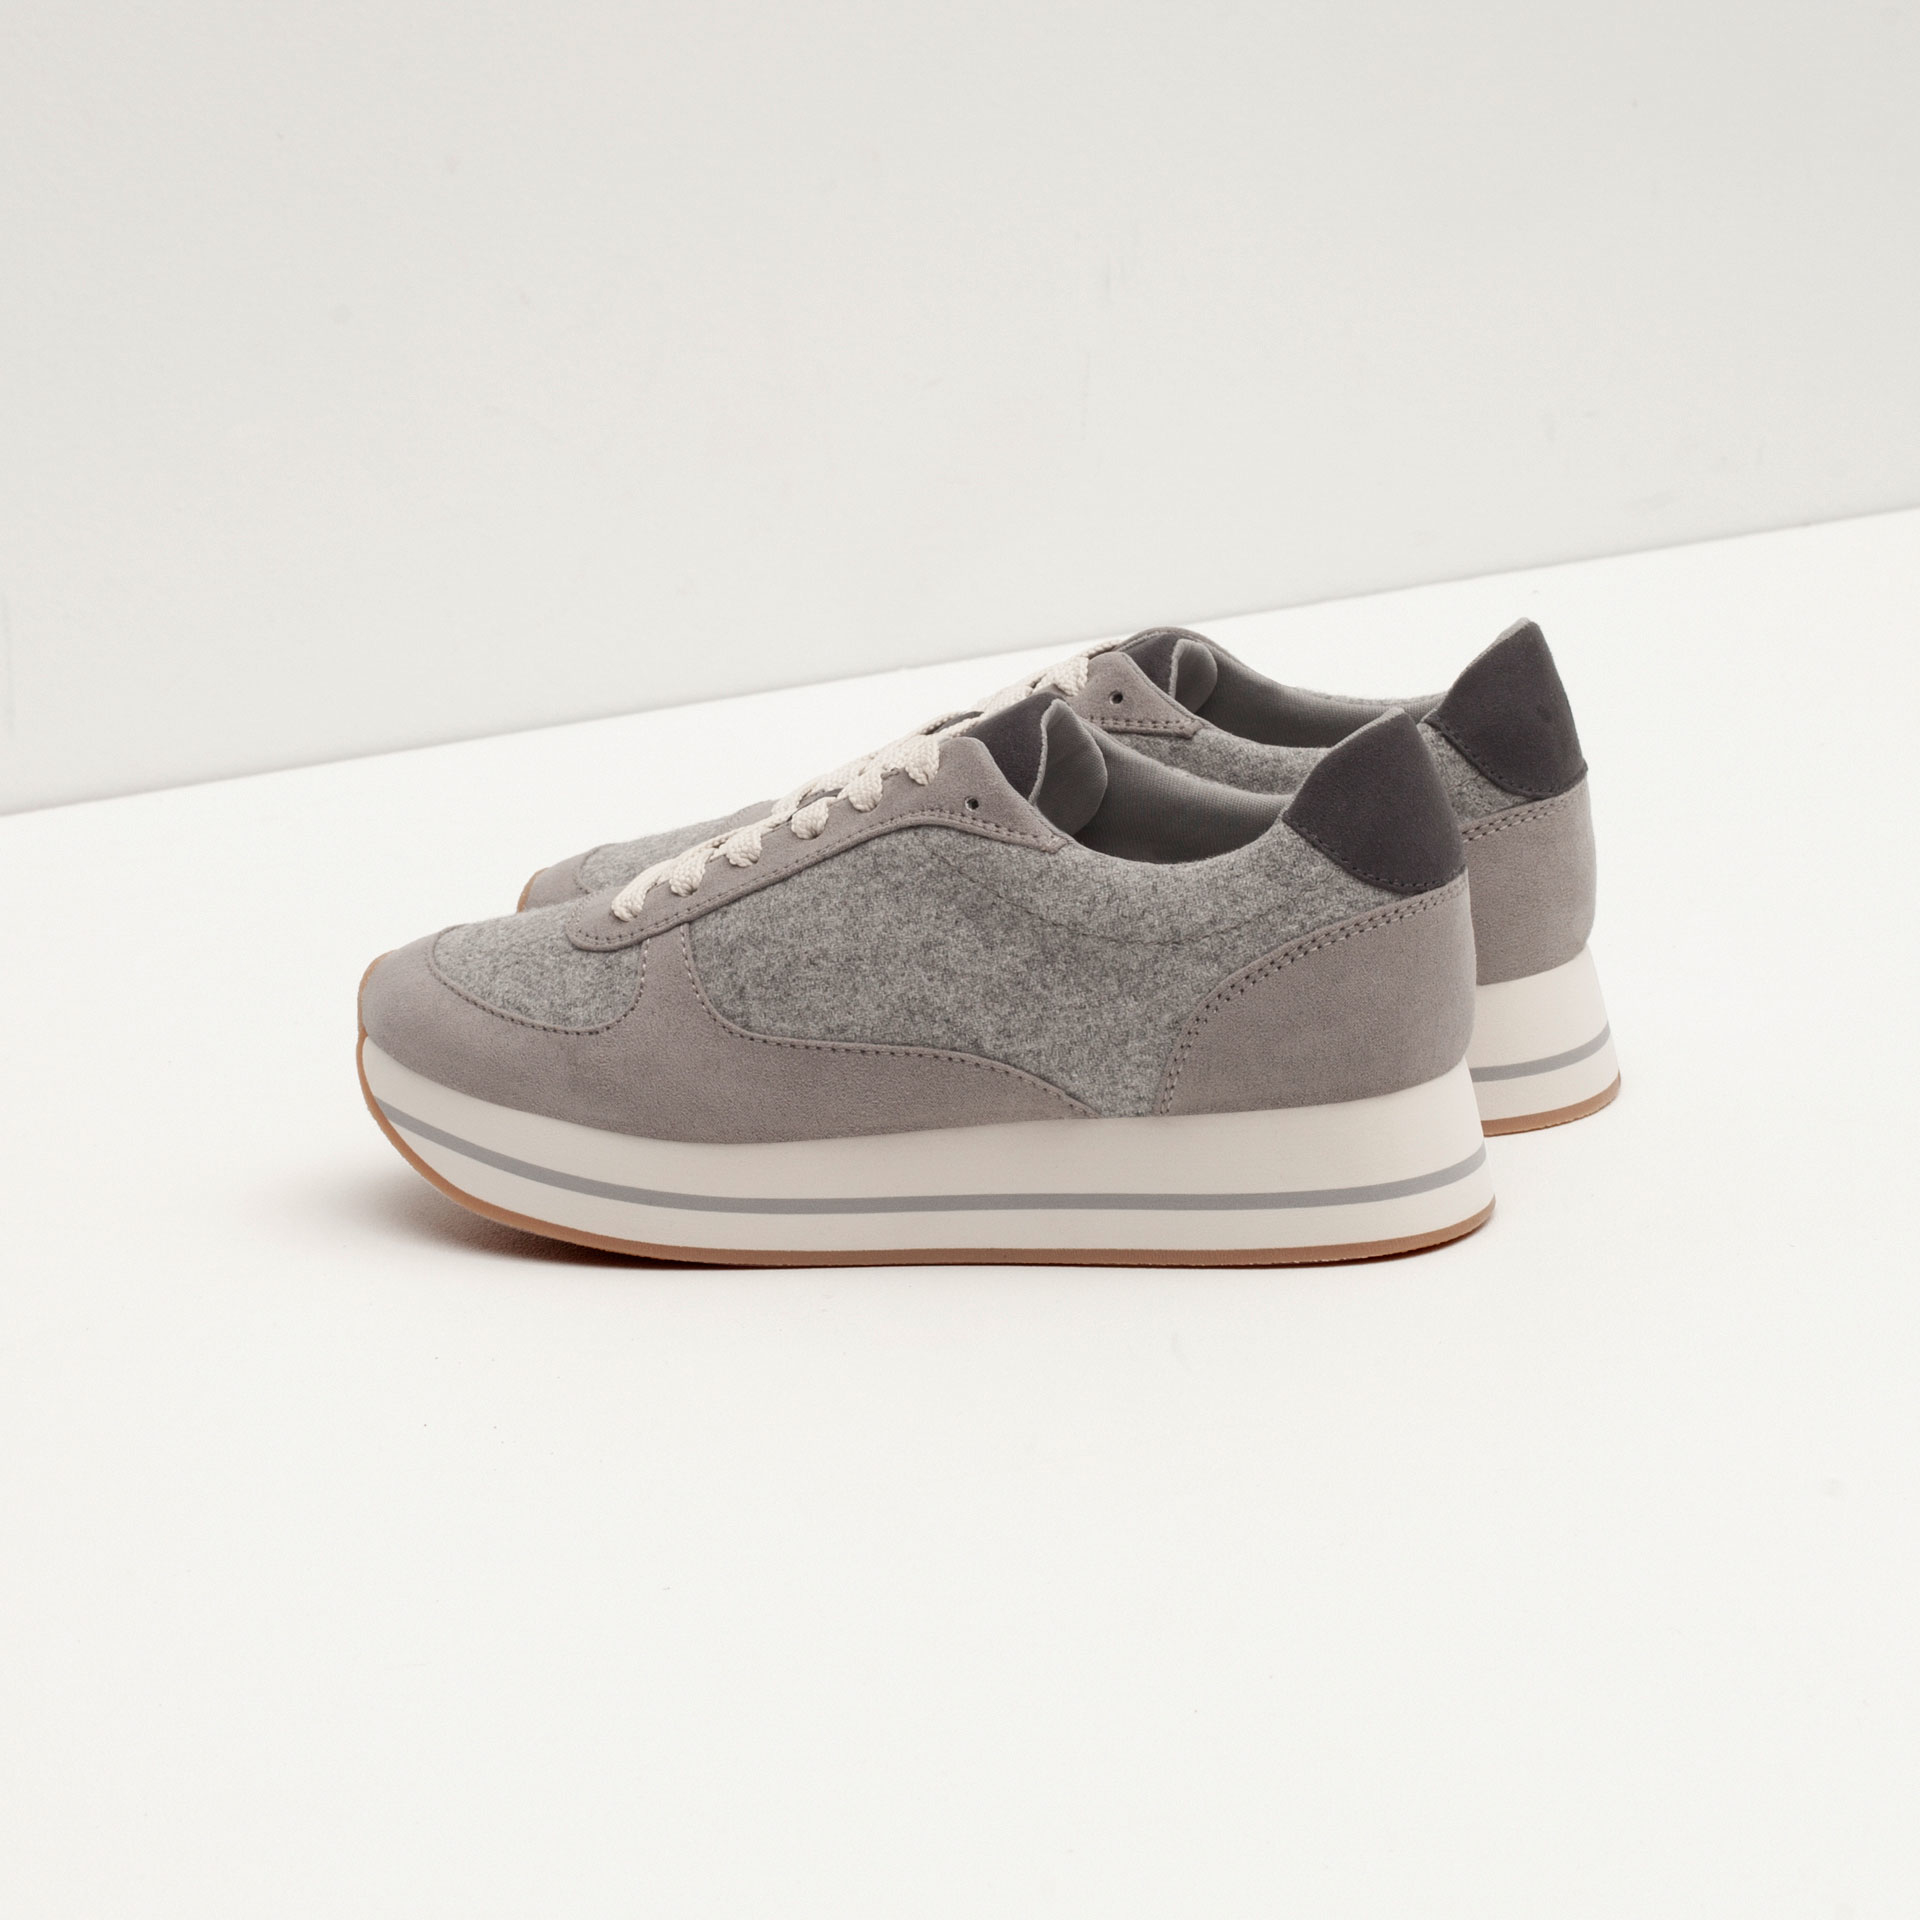 Zara Combined Sneakers in Gray | Lyst